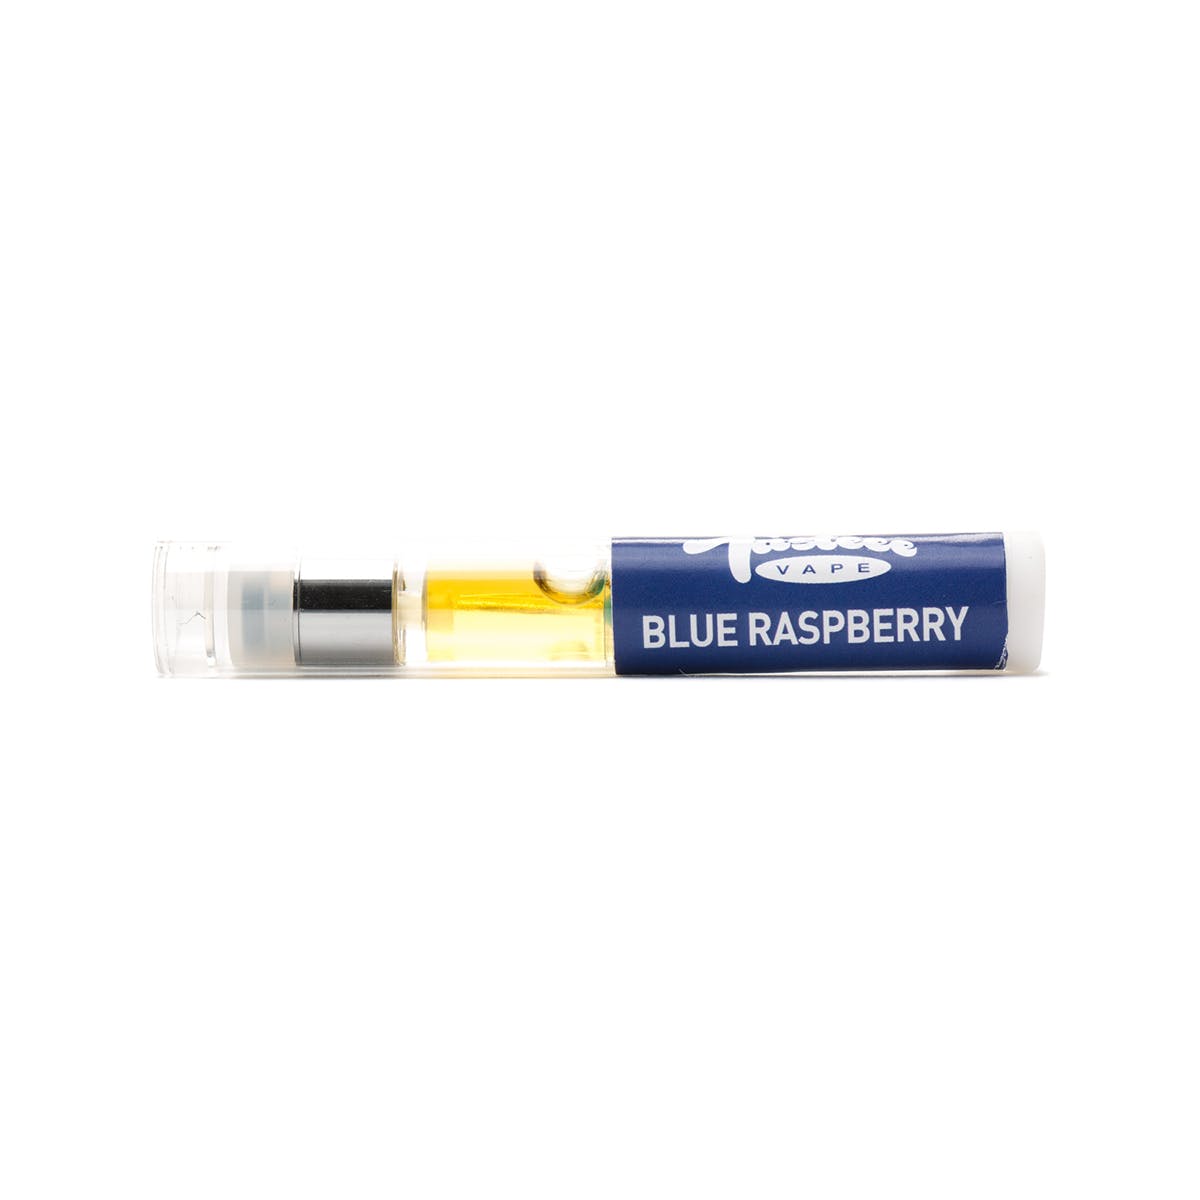 marijuana-dispensaries-scooters-in-los-angeles-blue-raspberry-tasteee-cartridge